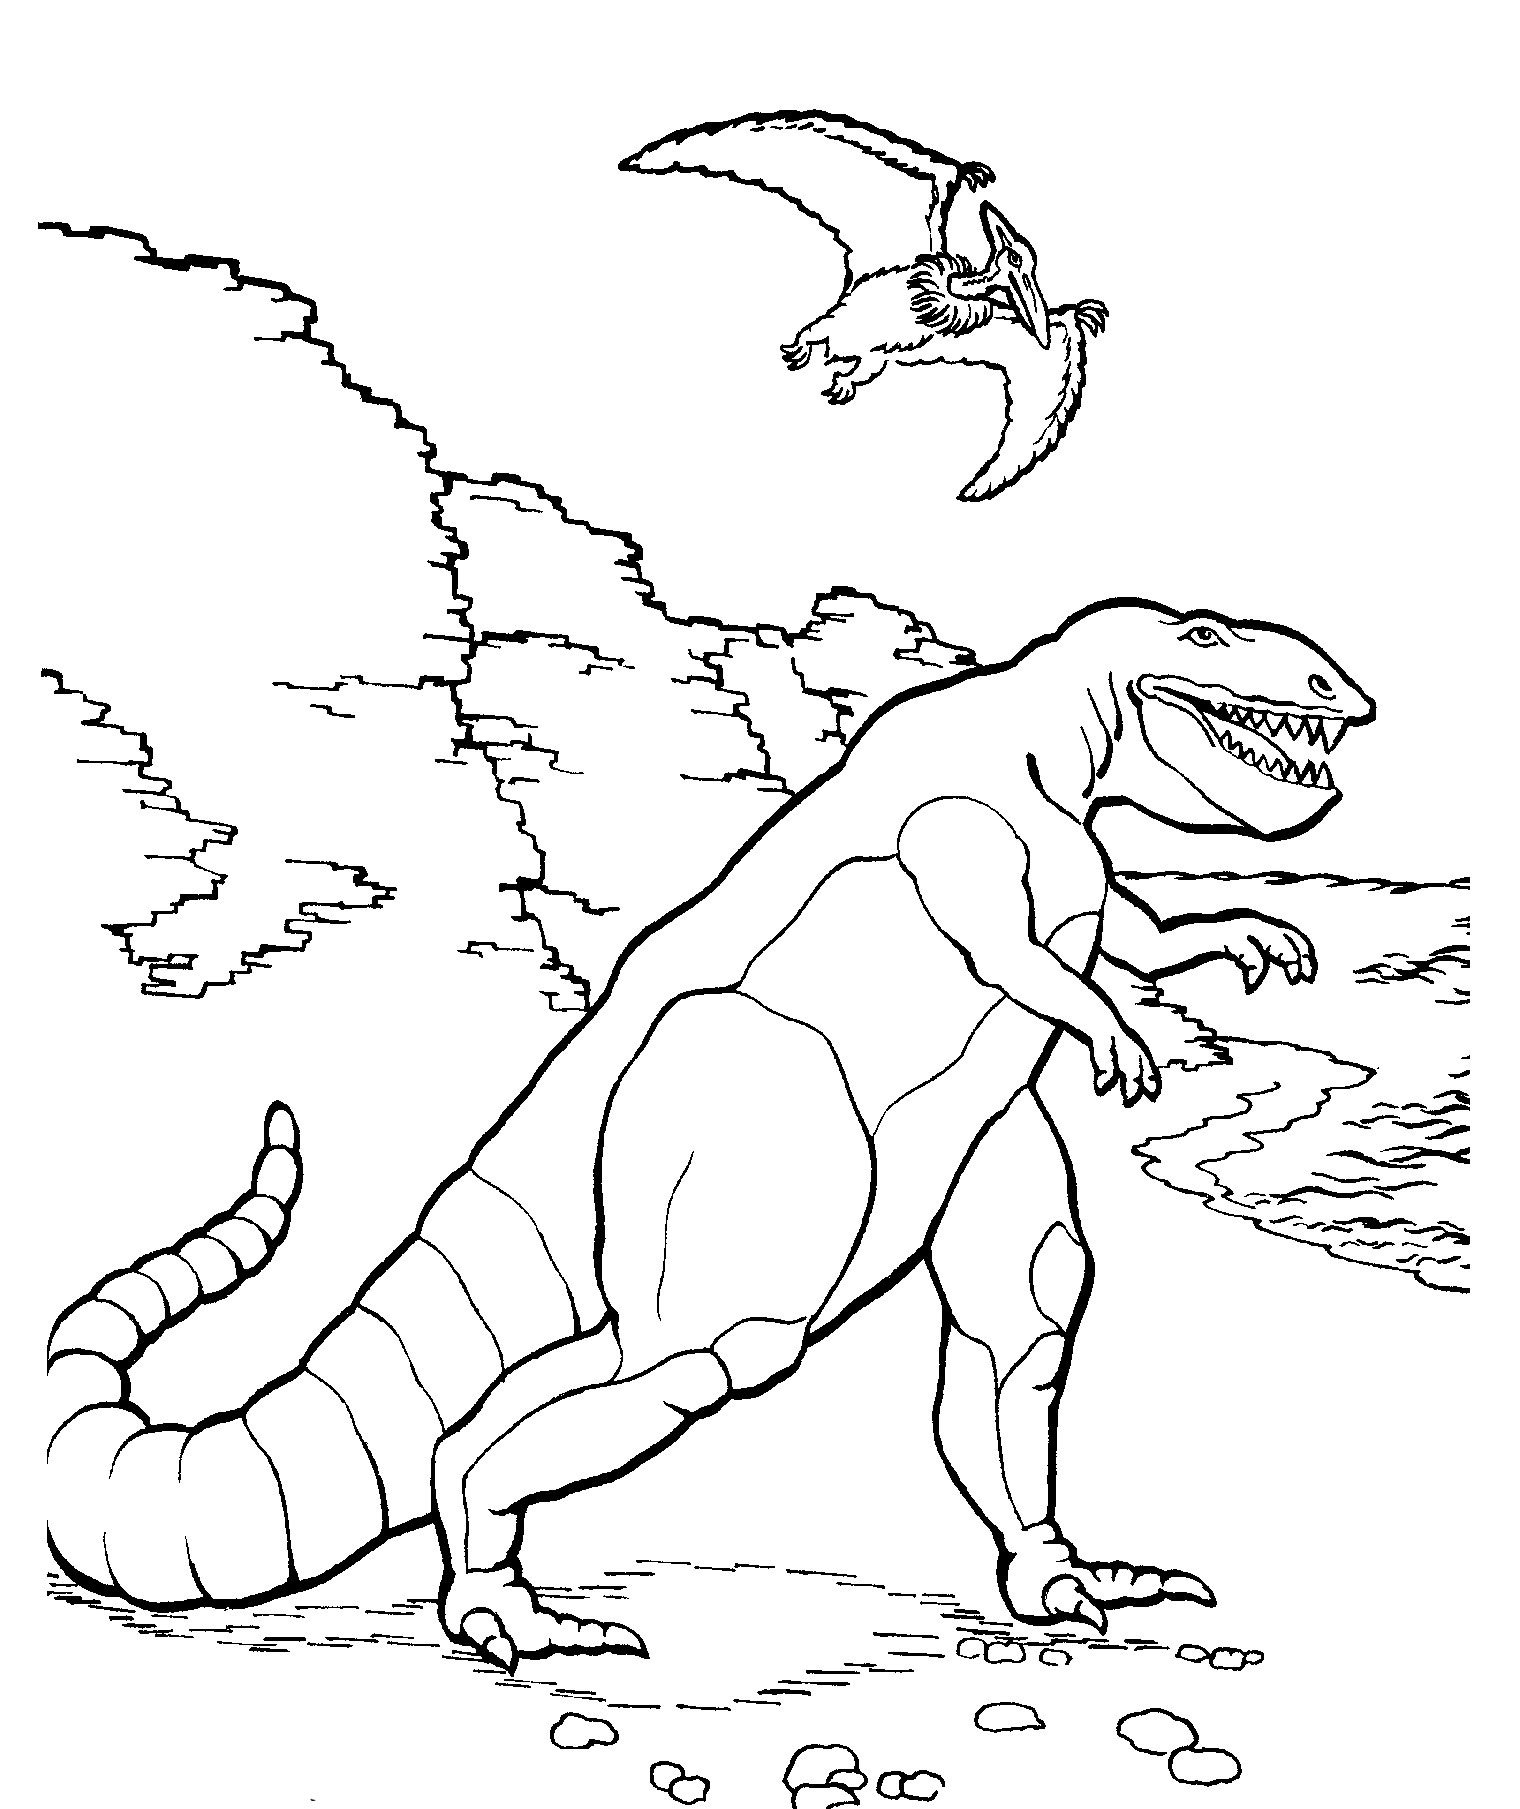 Динозавры раскраска а4. Тарбозавр раскраска динозавра. Раскраски для мальчиков Тарбозавр. Тарбозавр разукрашка. Динозавры / раскраска.